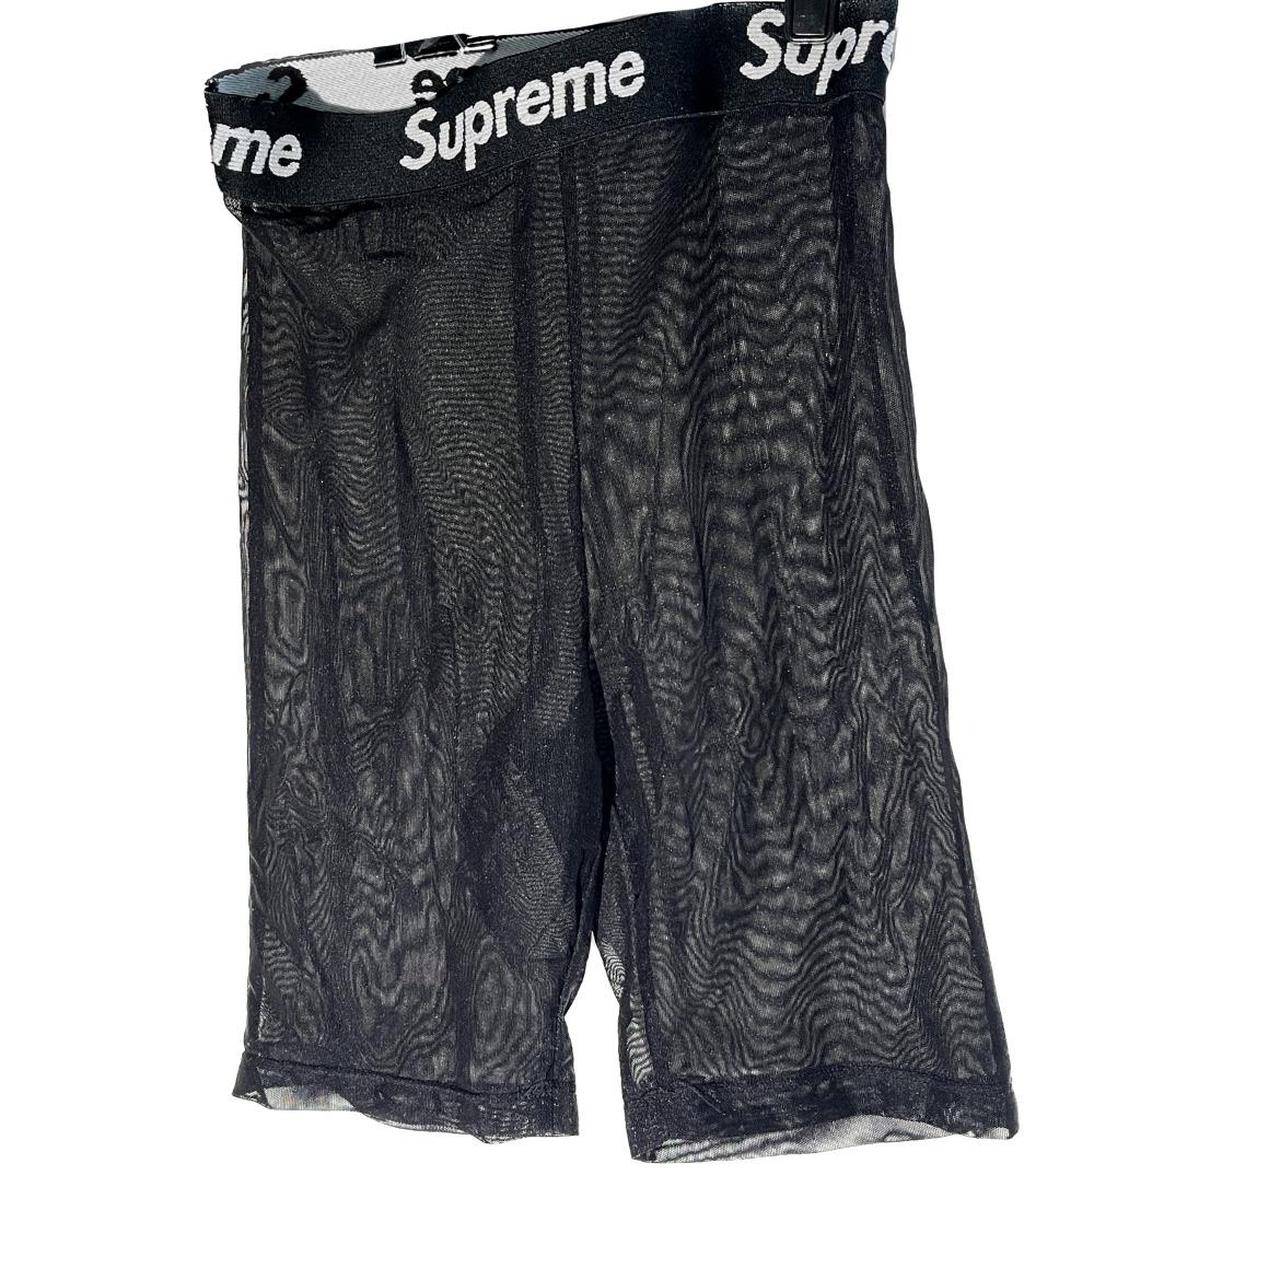 Reconstructed Supreme Biker mesh shorts Brand... - Depop